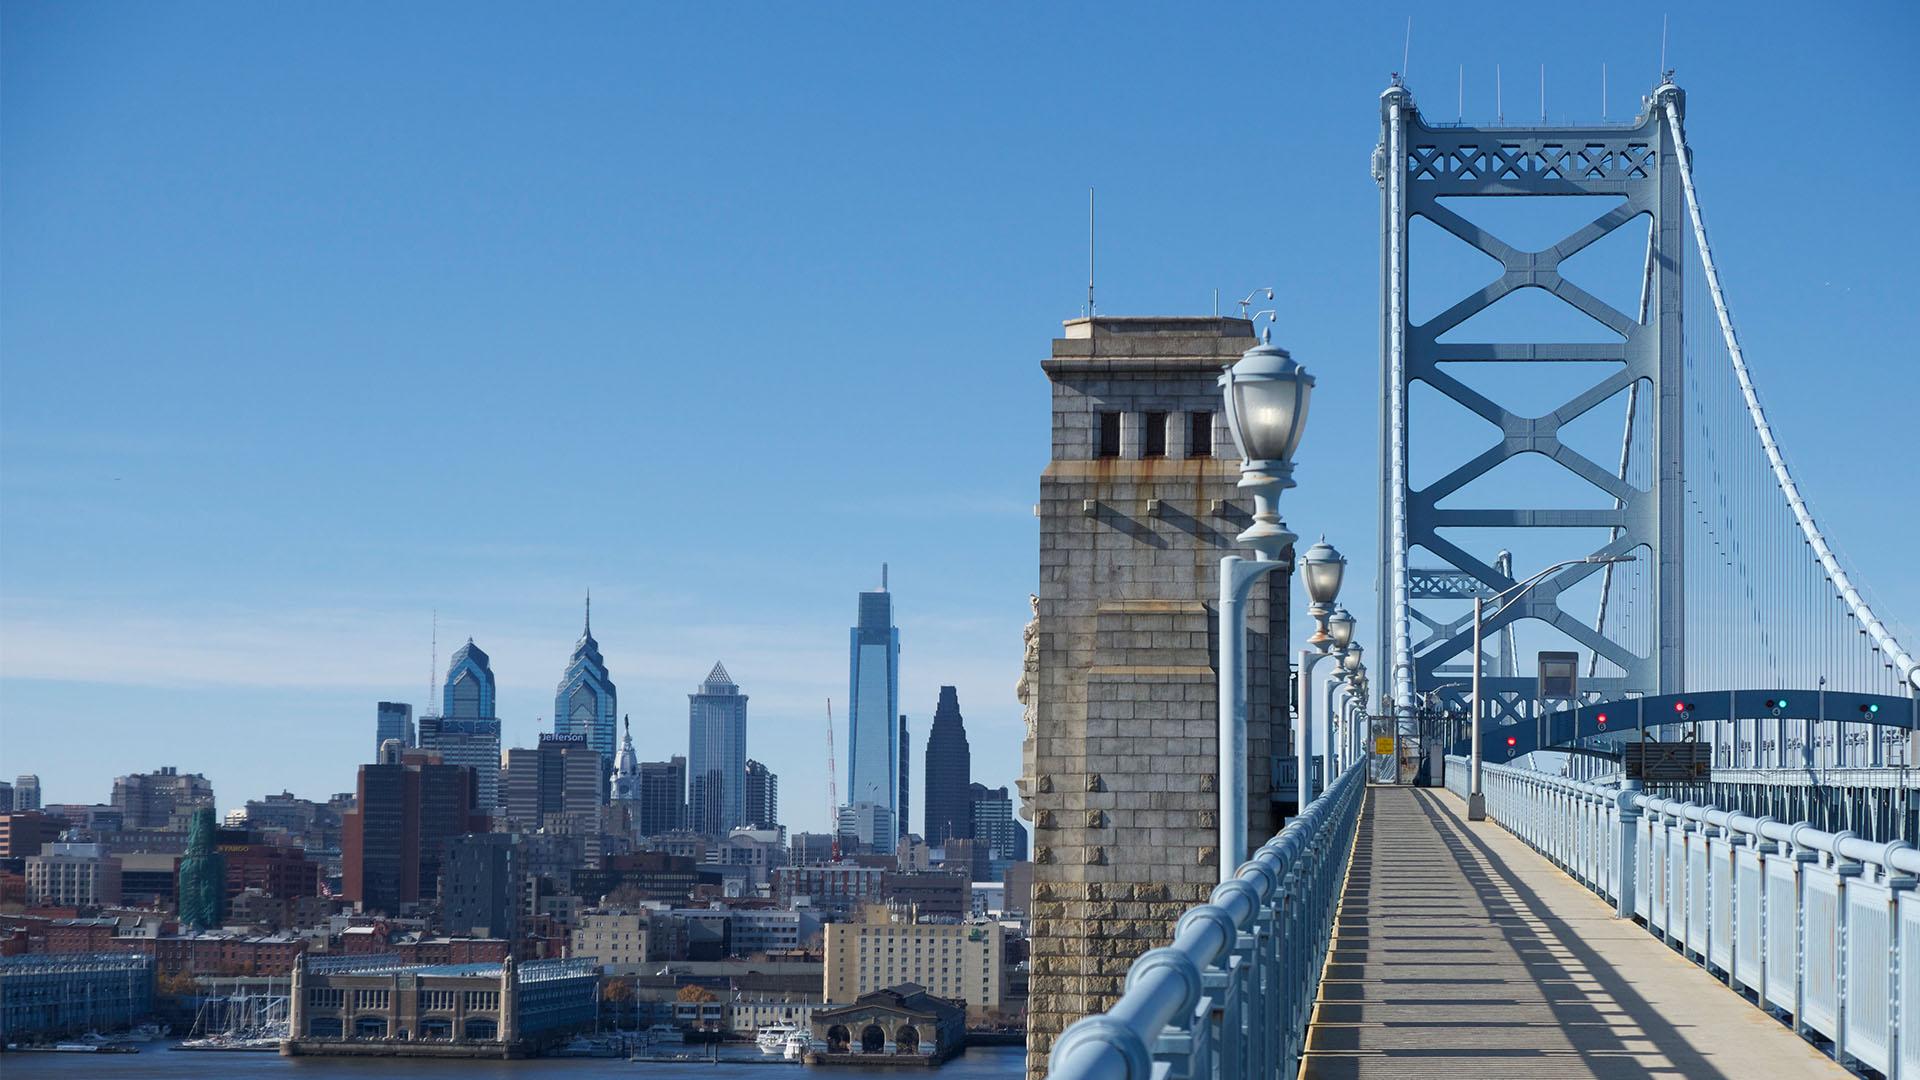 View of Philadelphia skyline from the Benjamin Franklin Bridge